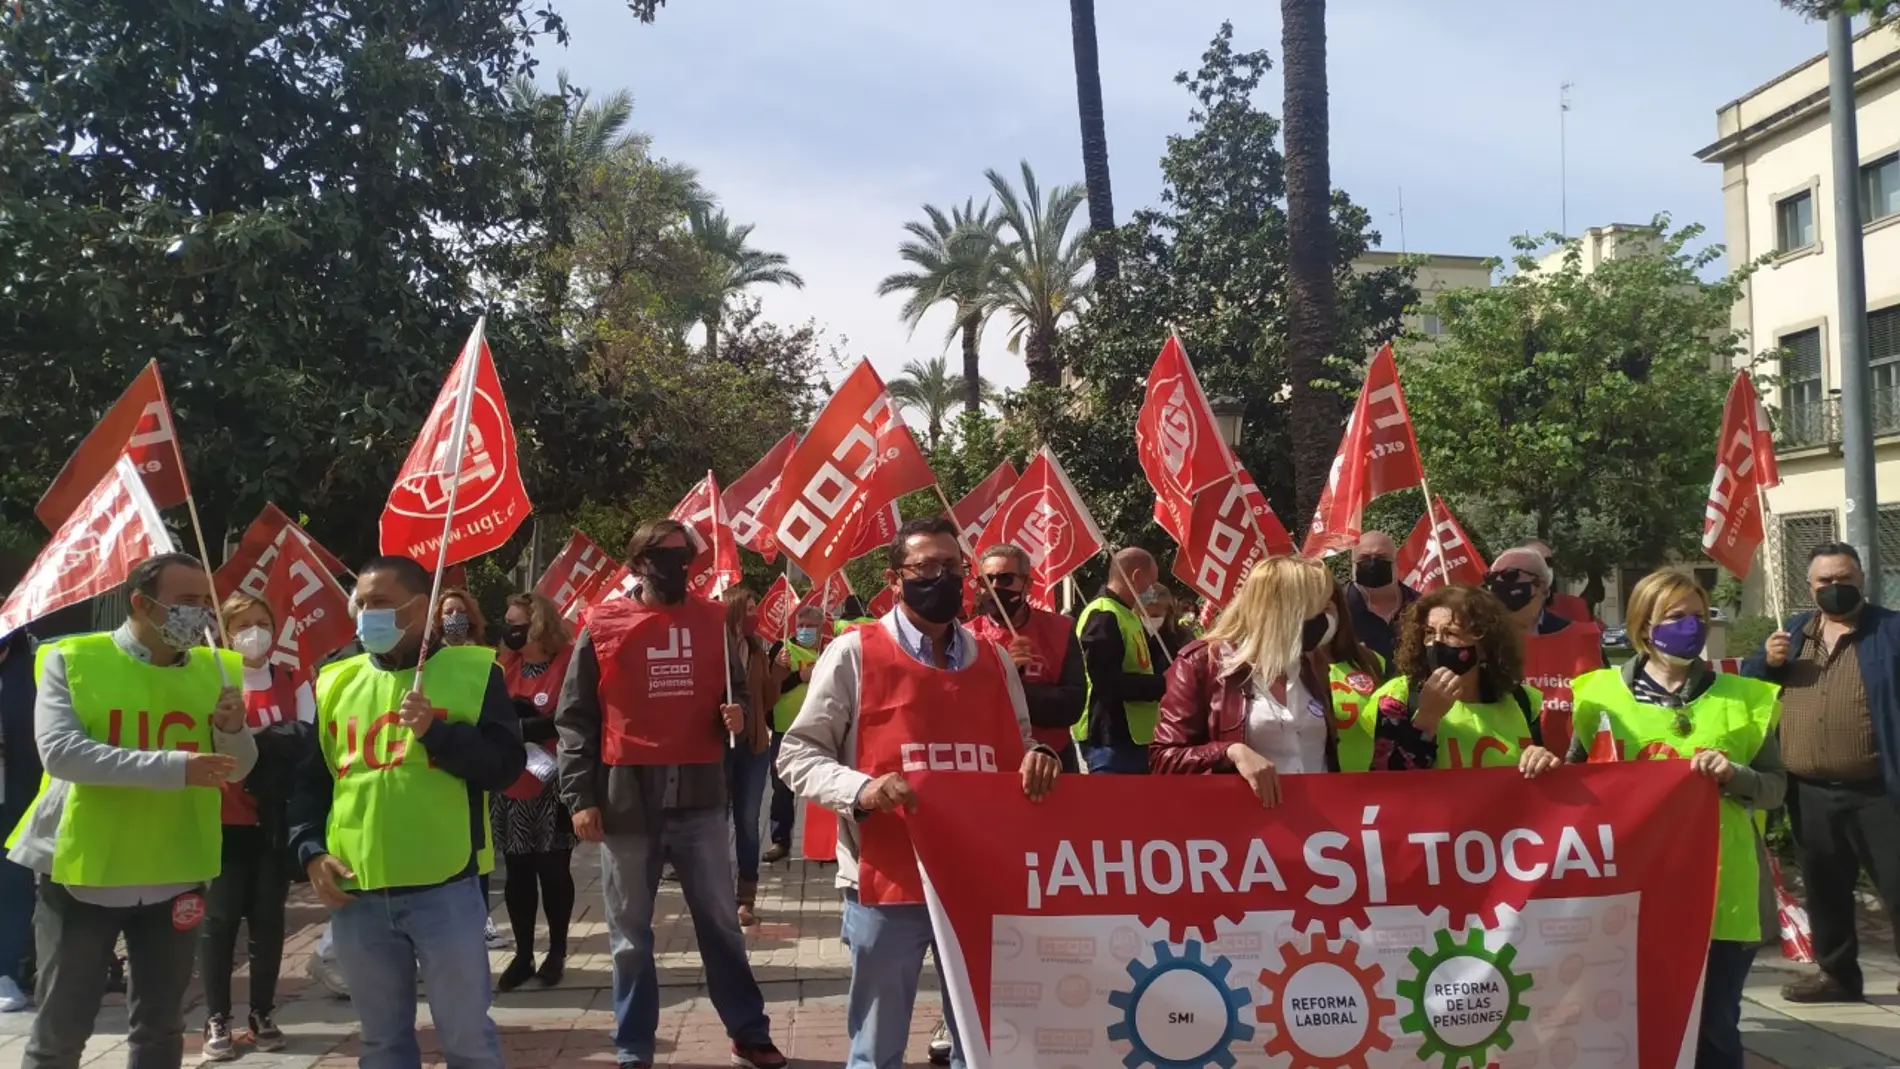 CCOO y UGT Extremadura se manifestaban hoy en Badajoz para pedir al gobierno de la nación que derogue la reforma laboral y suba el SMI